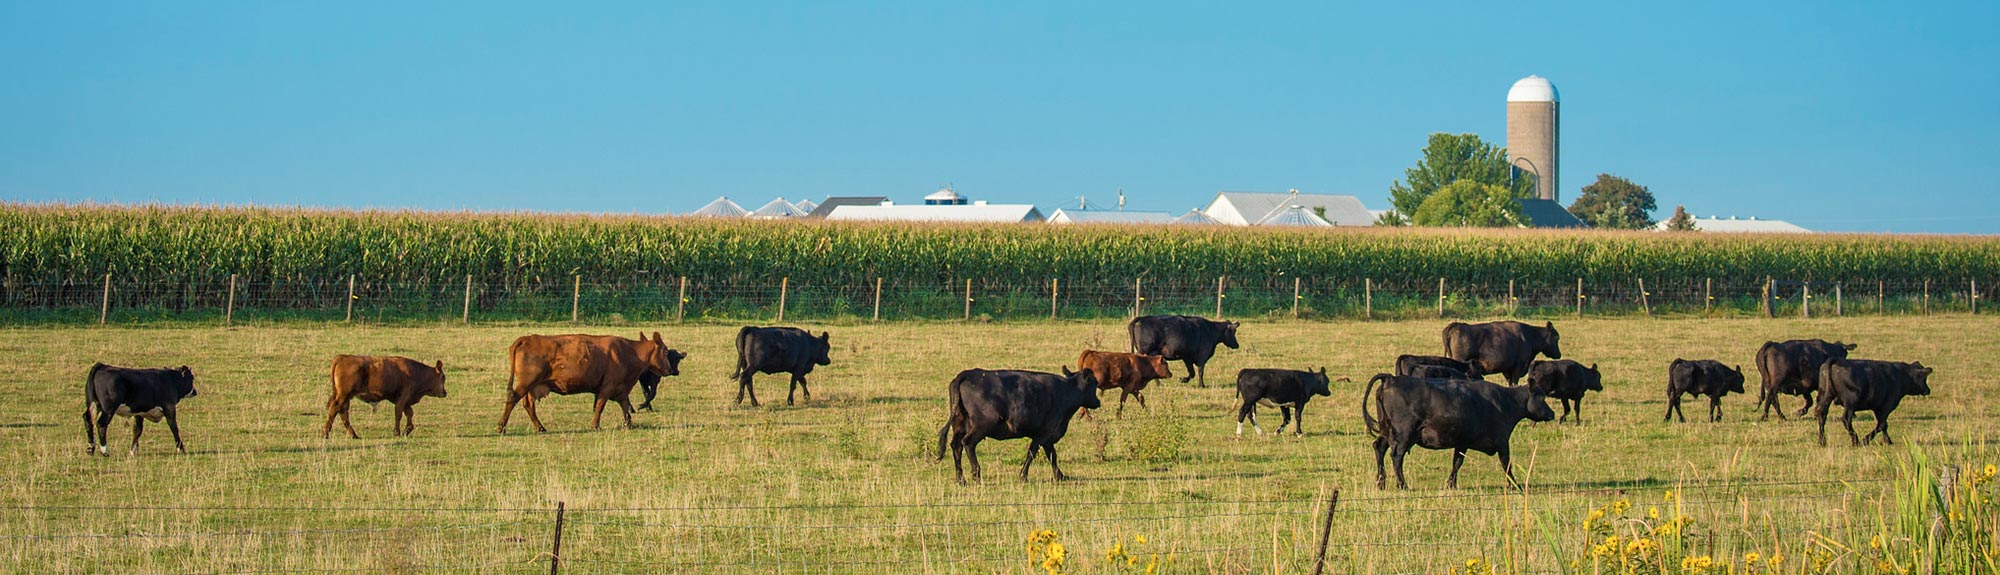 cattle walking in a field